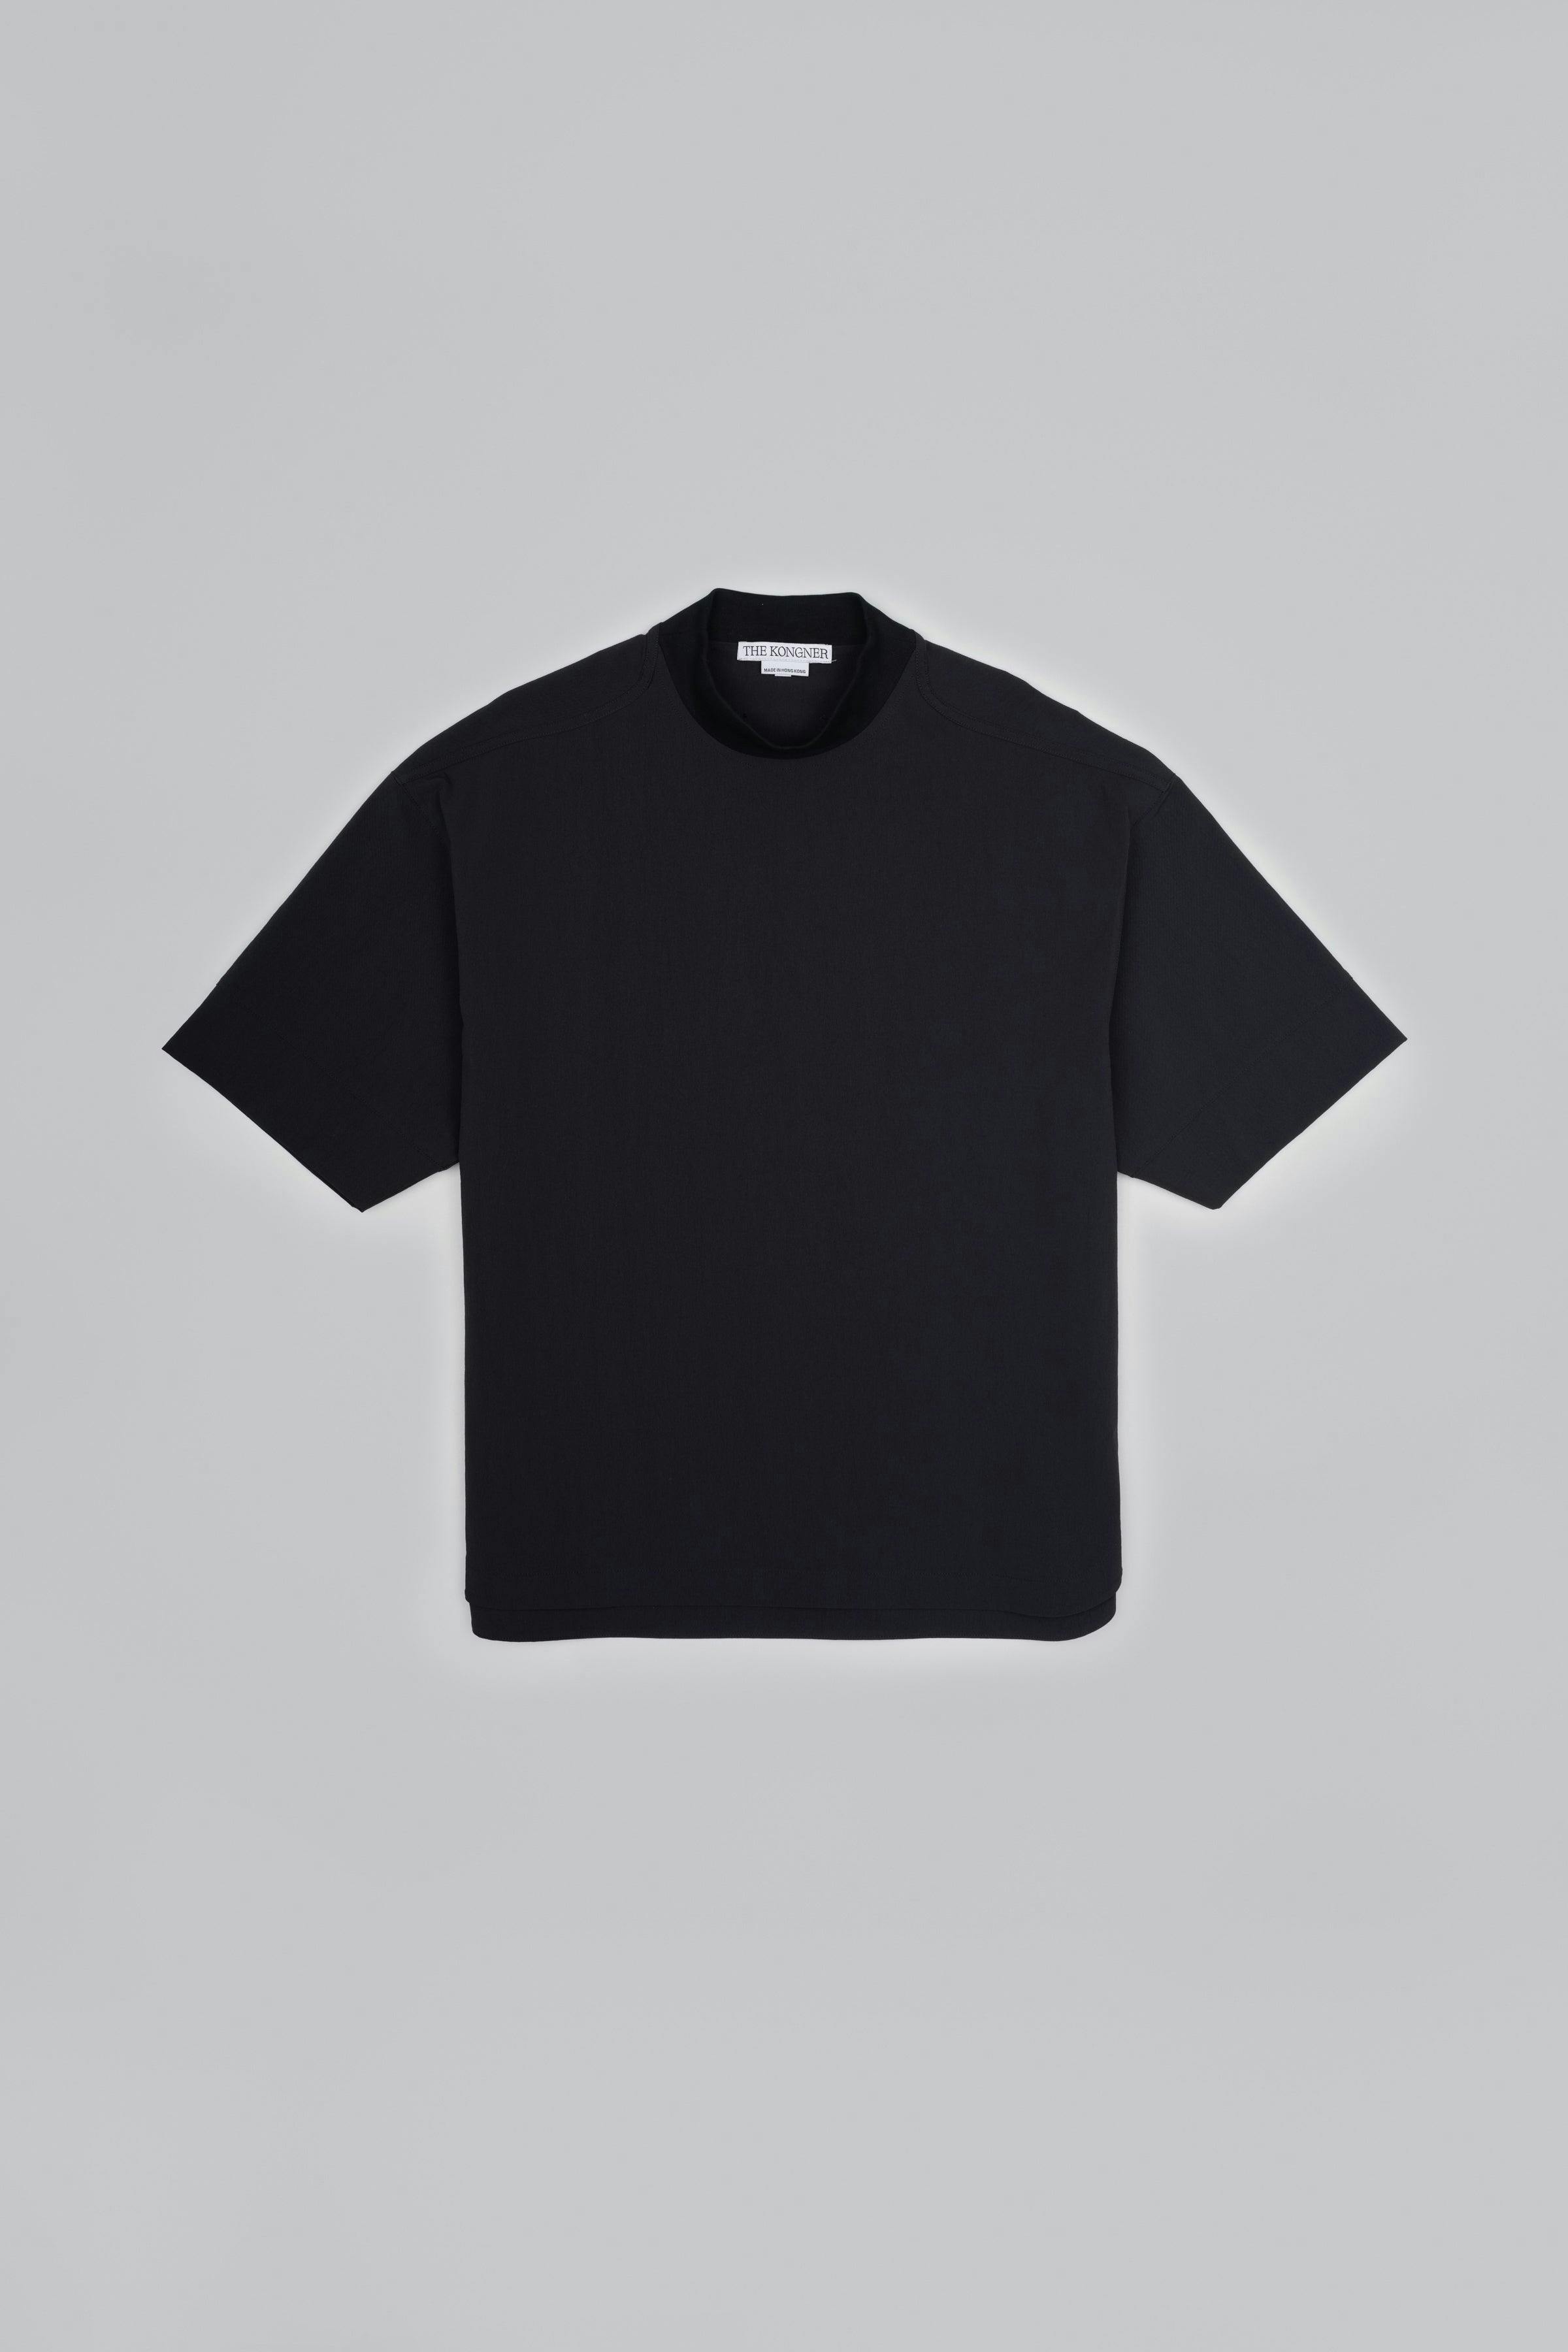 ˝INVERSE˝ Woven T-Shirt - Plain Black